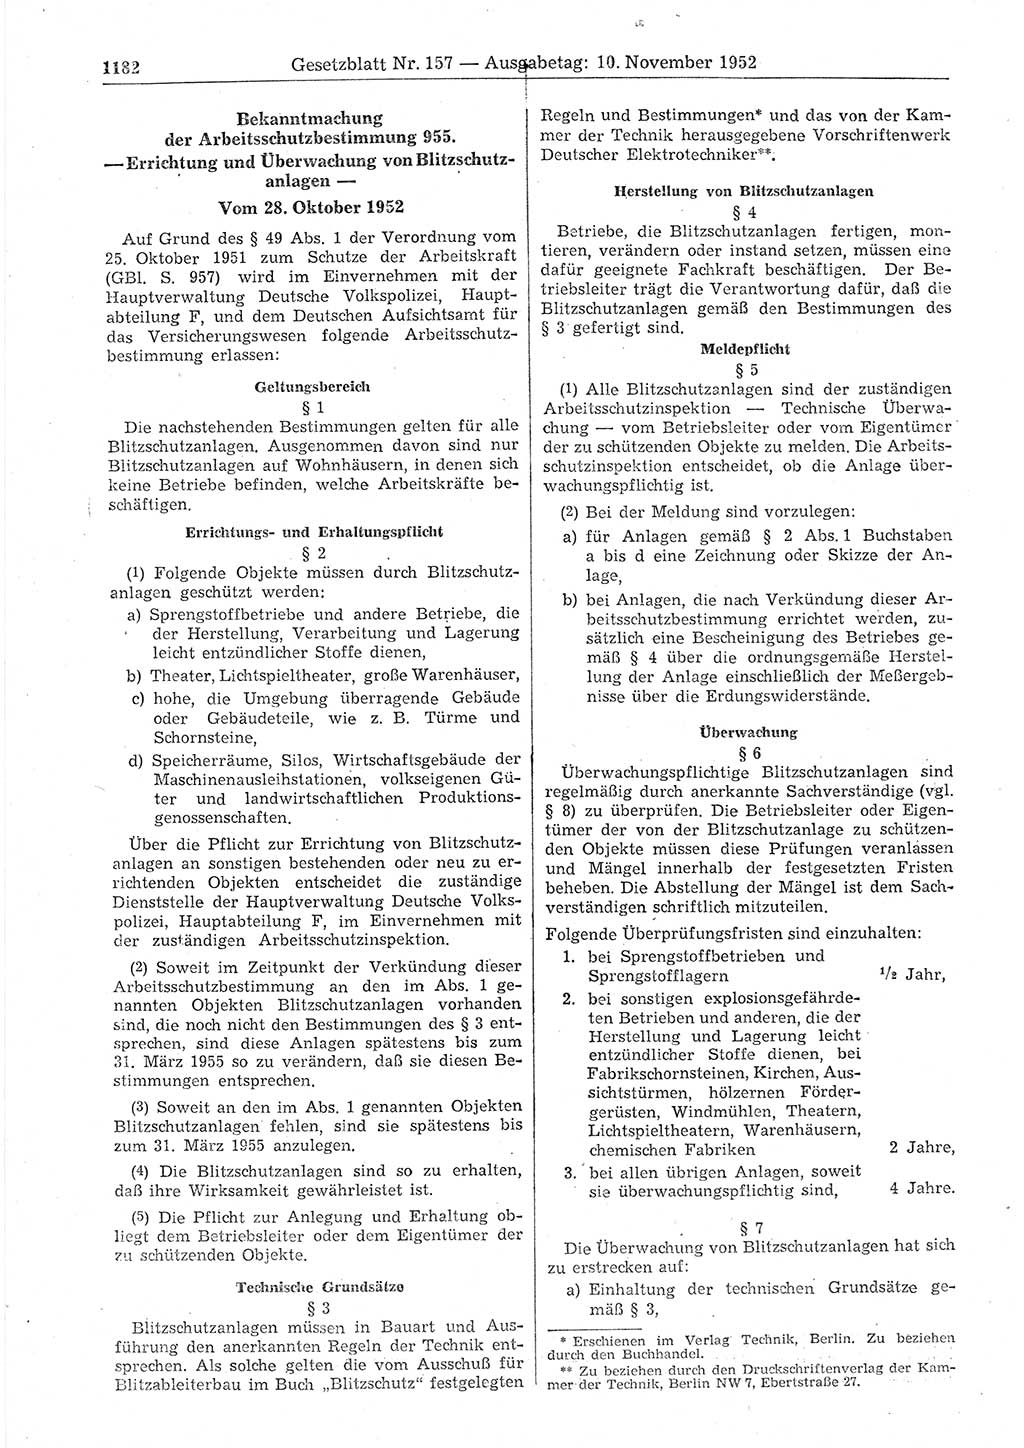 Gesetzblatt (GBl.) der Deutschen Demokratischen Republik (DDR) 1952, Seite 1182 (GBl. DDR 1952, S. 1182)